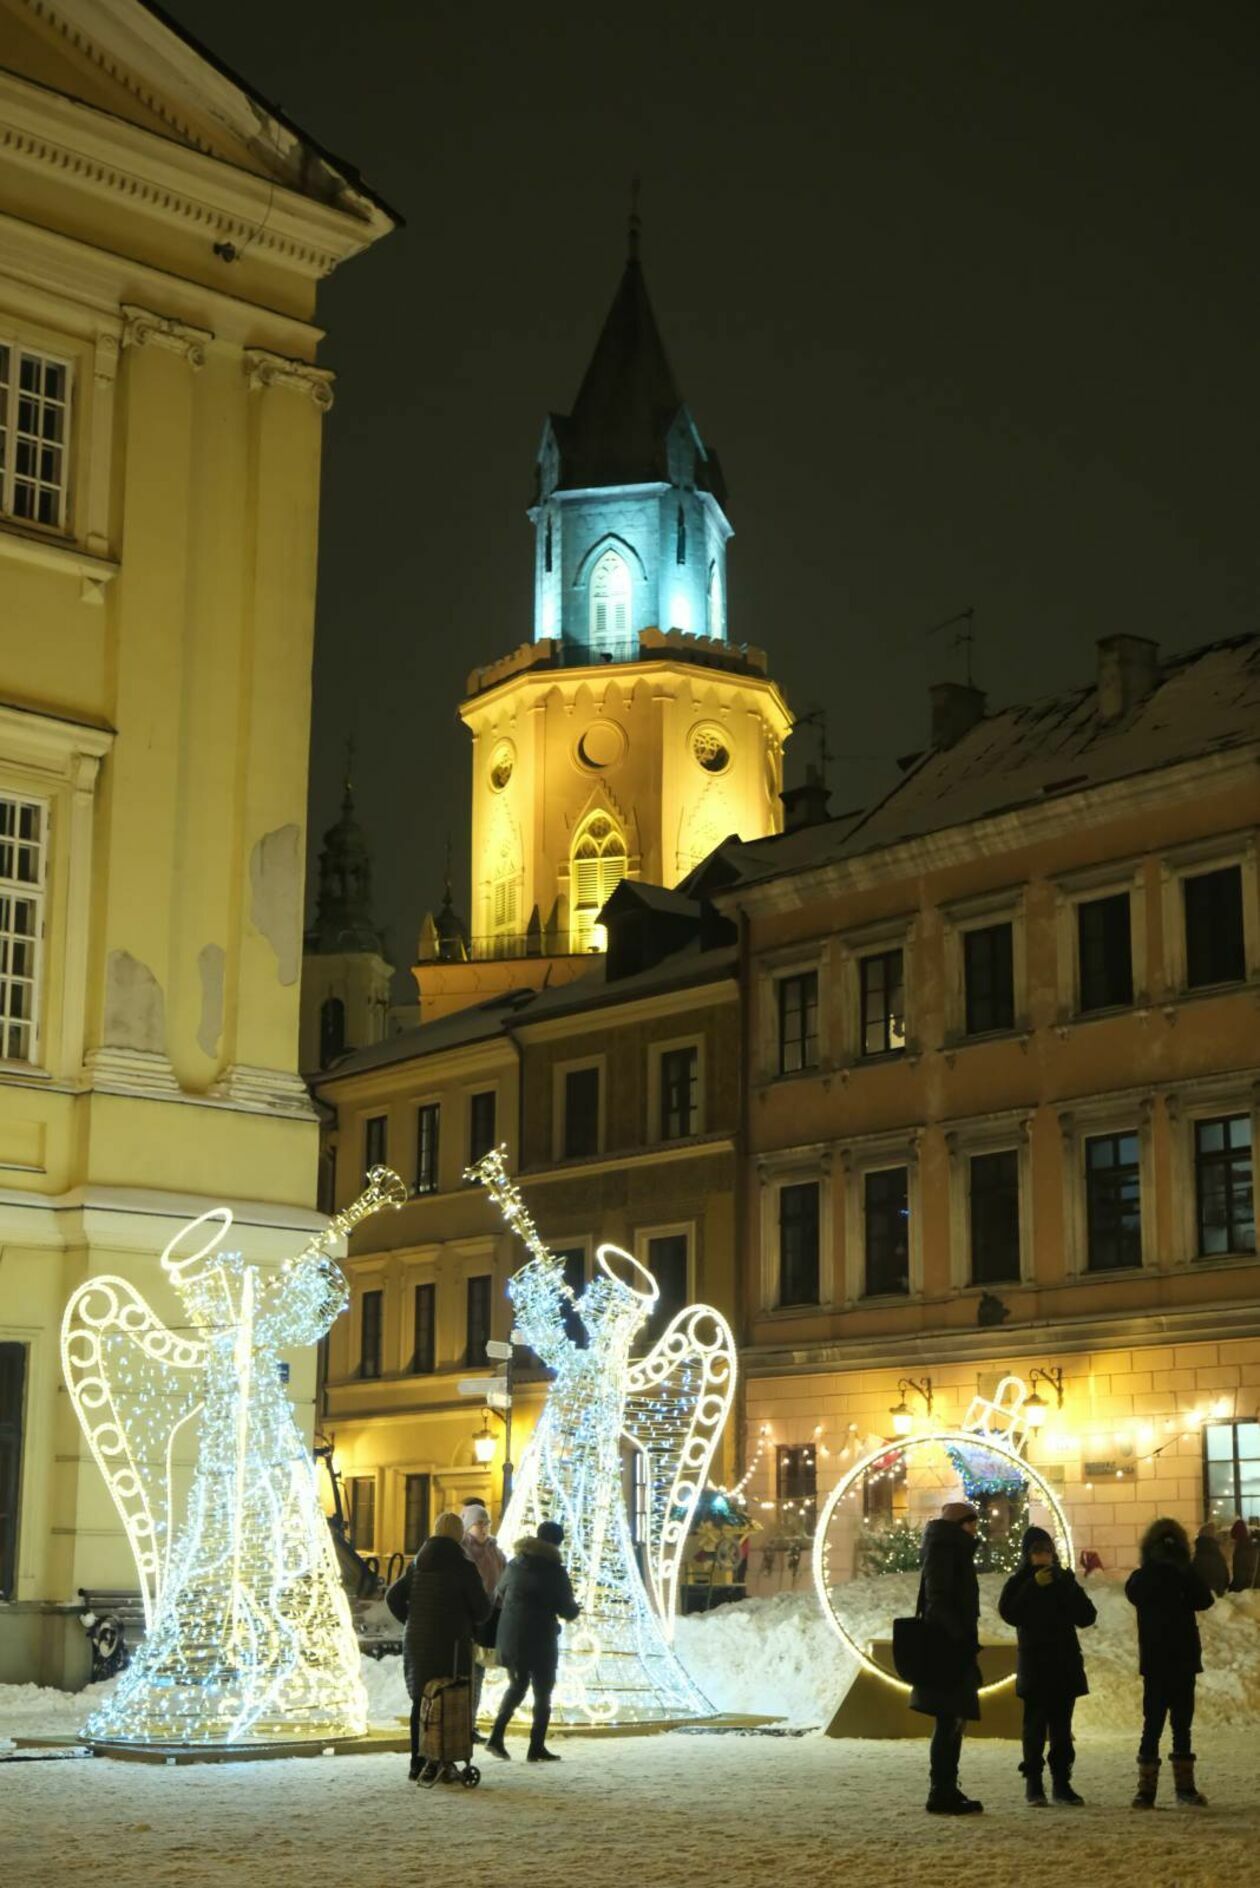  Choinka i świateczne ozdoby już rozświetlają deptak i Stare Miasto  - Autor: DW